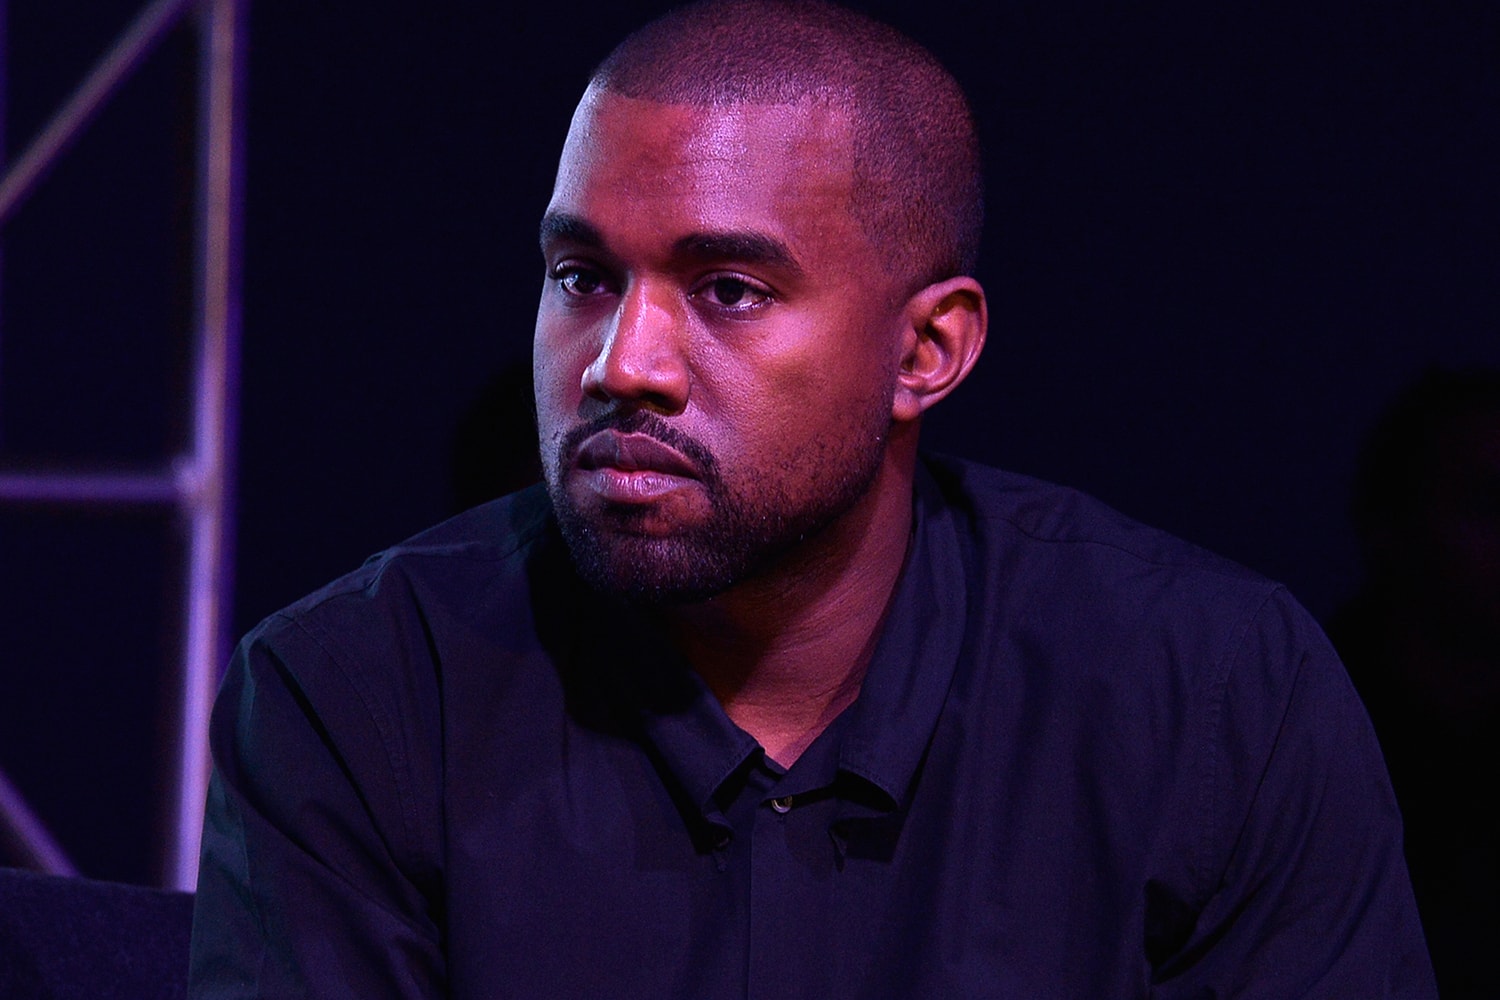 Kanye West YEEZY Gap Designs Unreleased Footwear Look Twitter Dome Homes